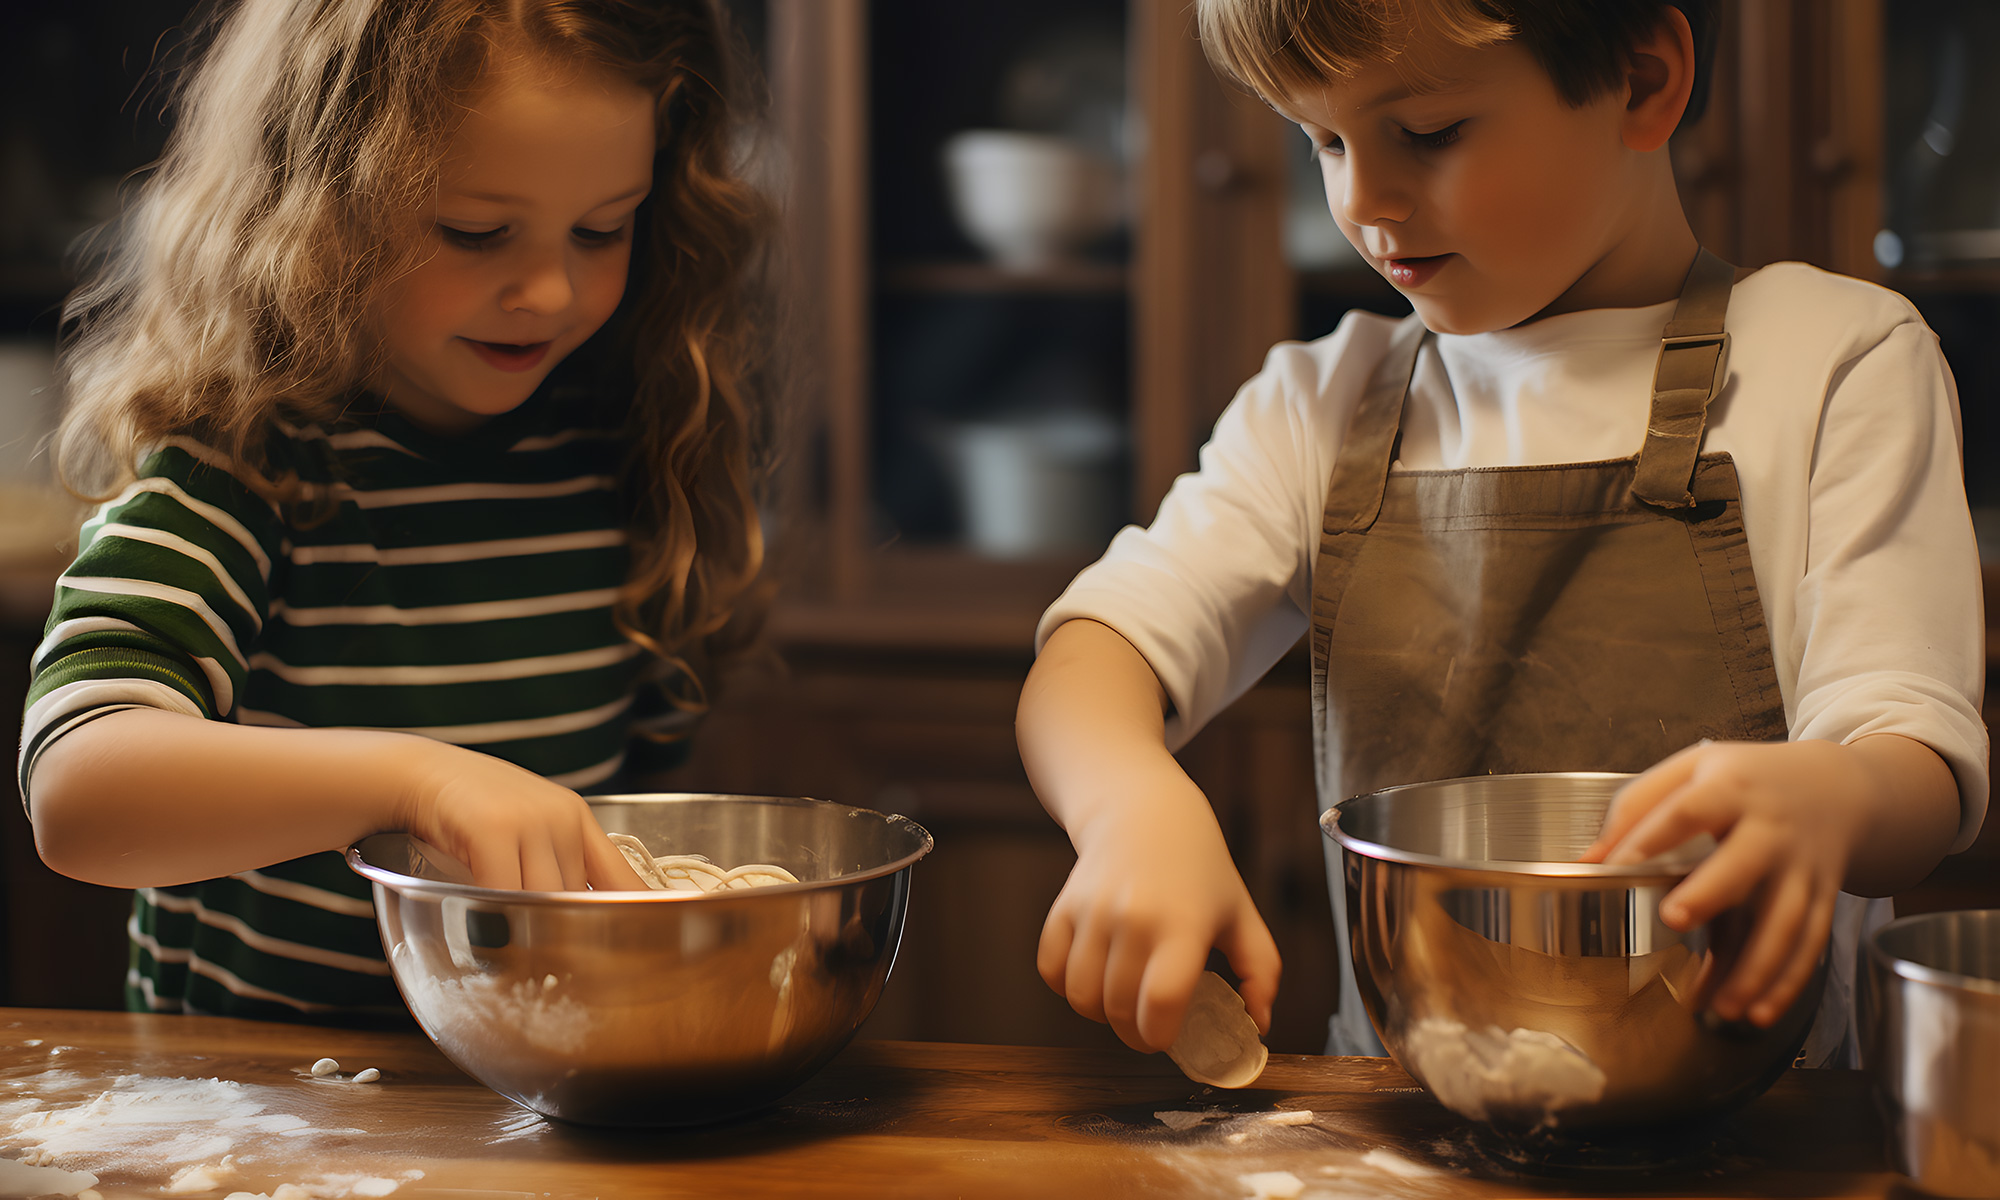 Involving Children in the Kitchen